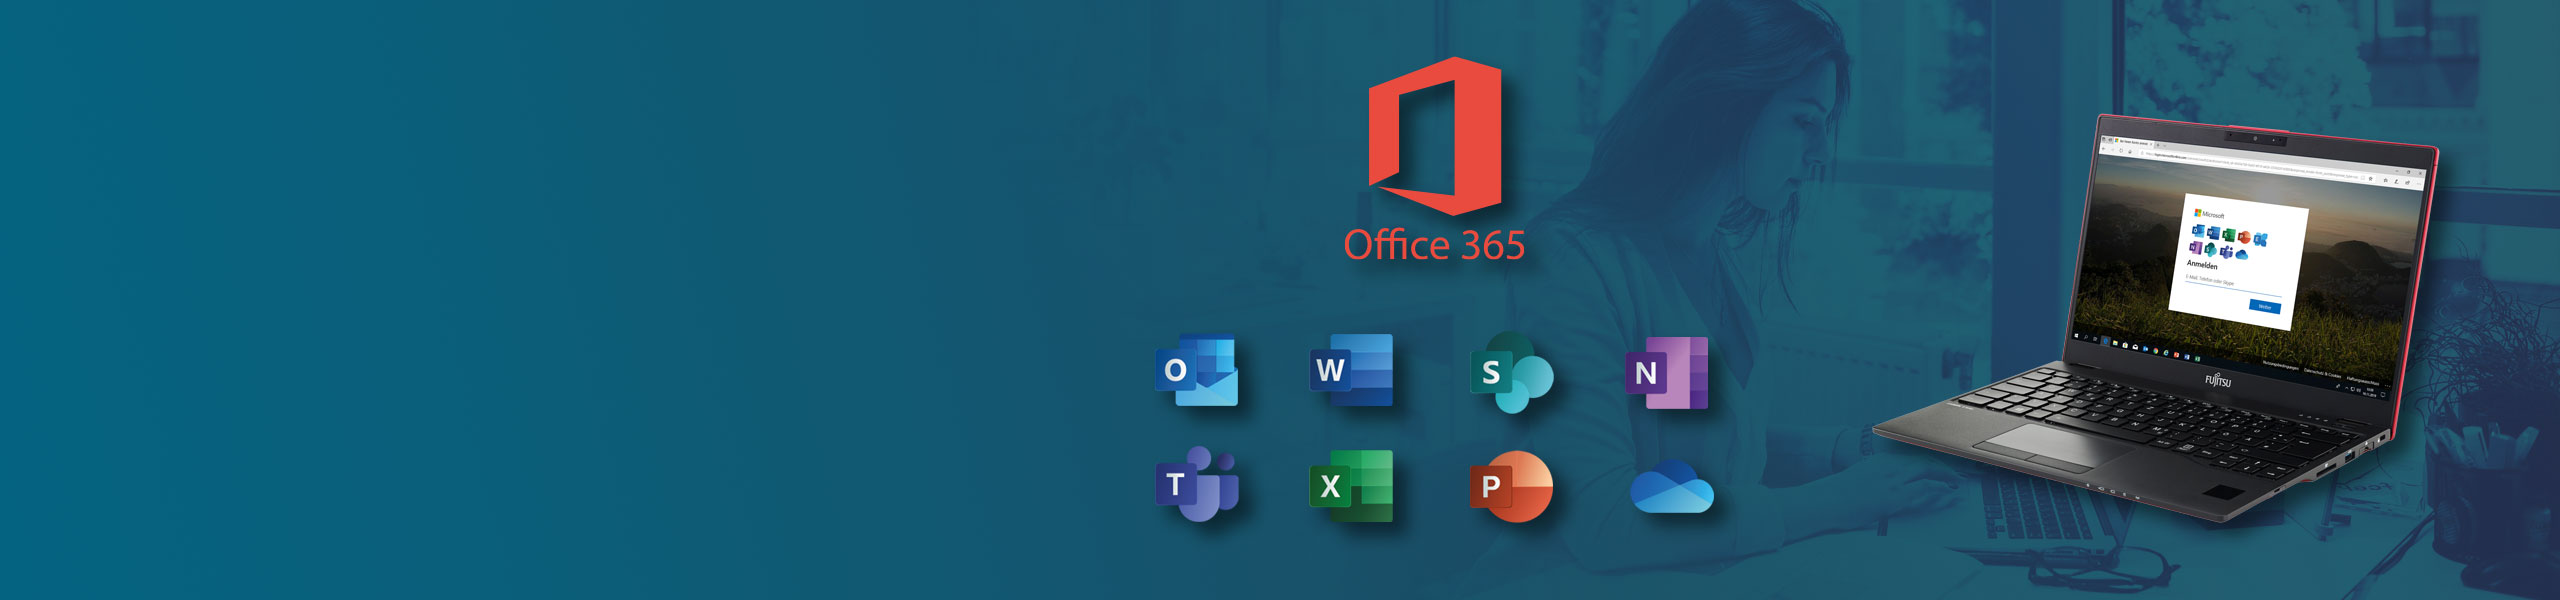 Office 365 für Home Office